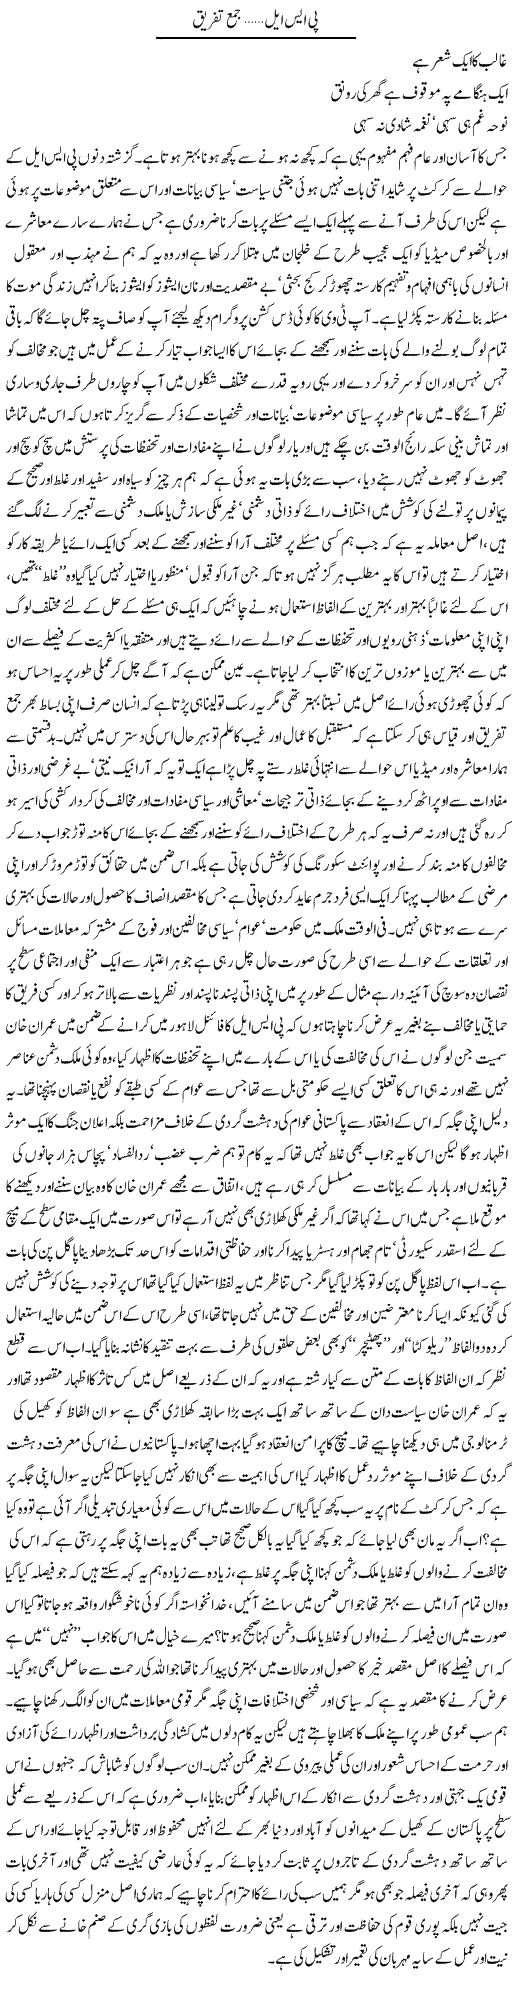 Psl, Jama Tafreeq | Amjad Islam Amjad | Daily Urdu Columns